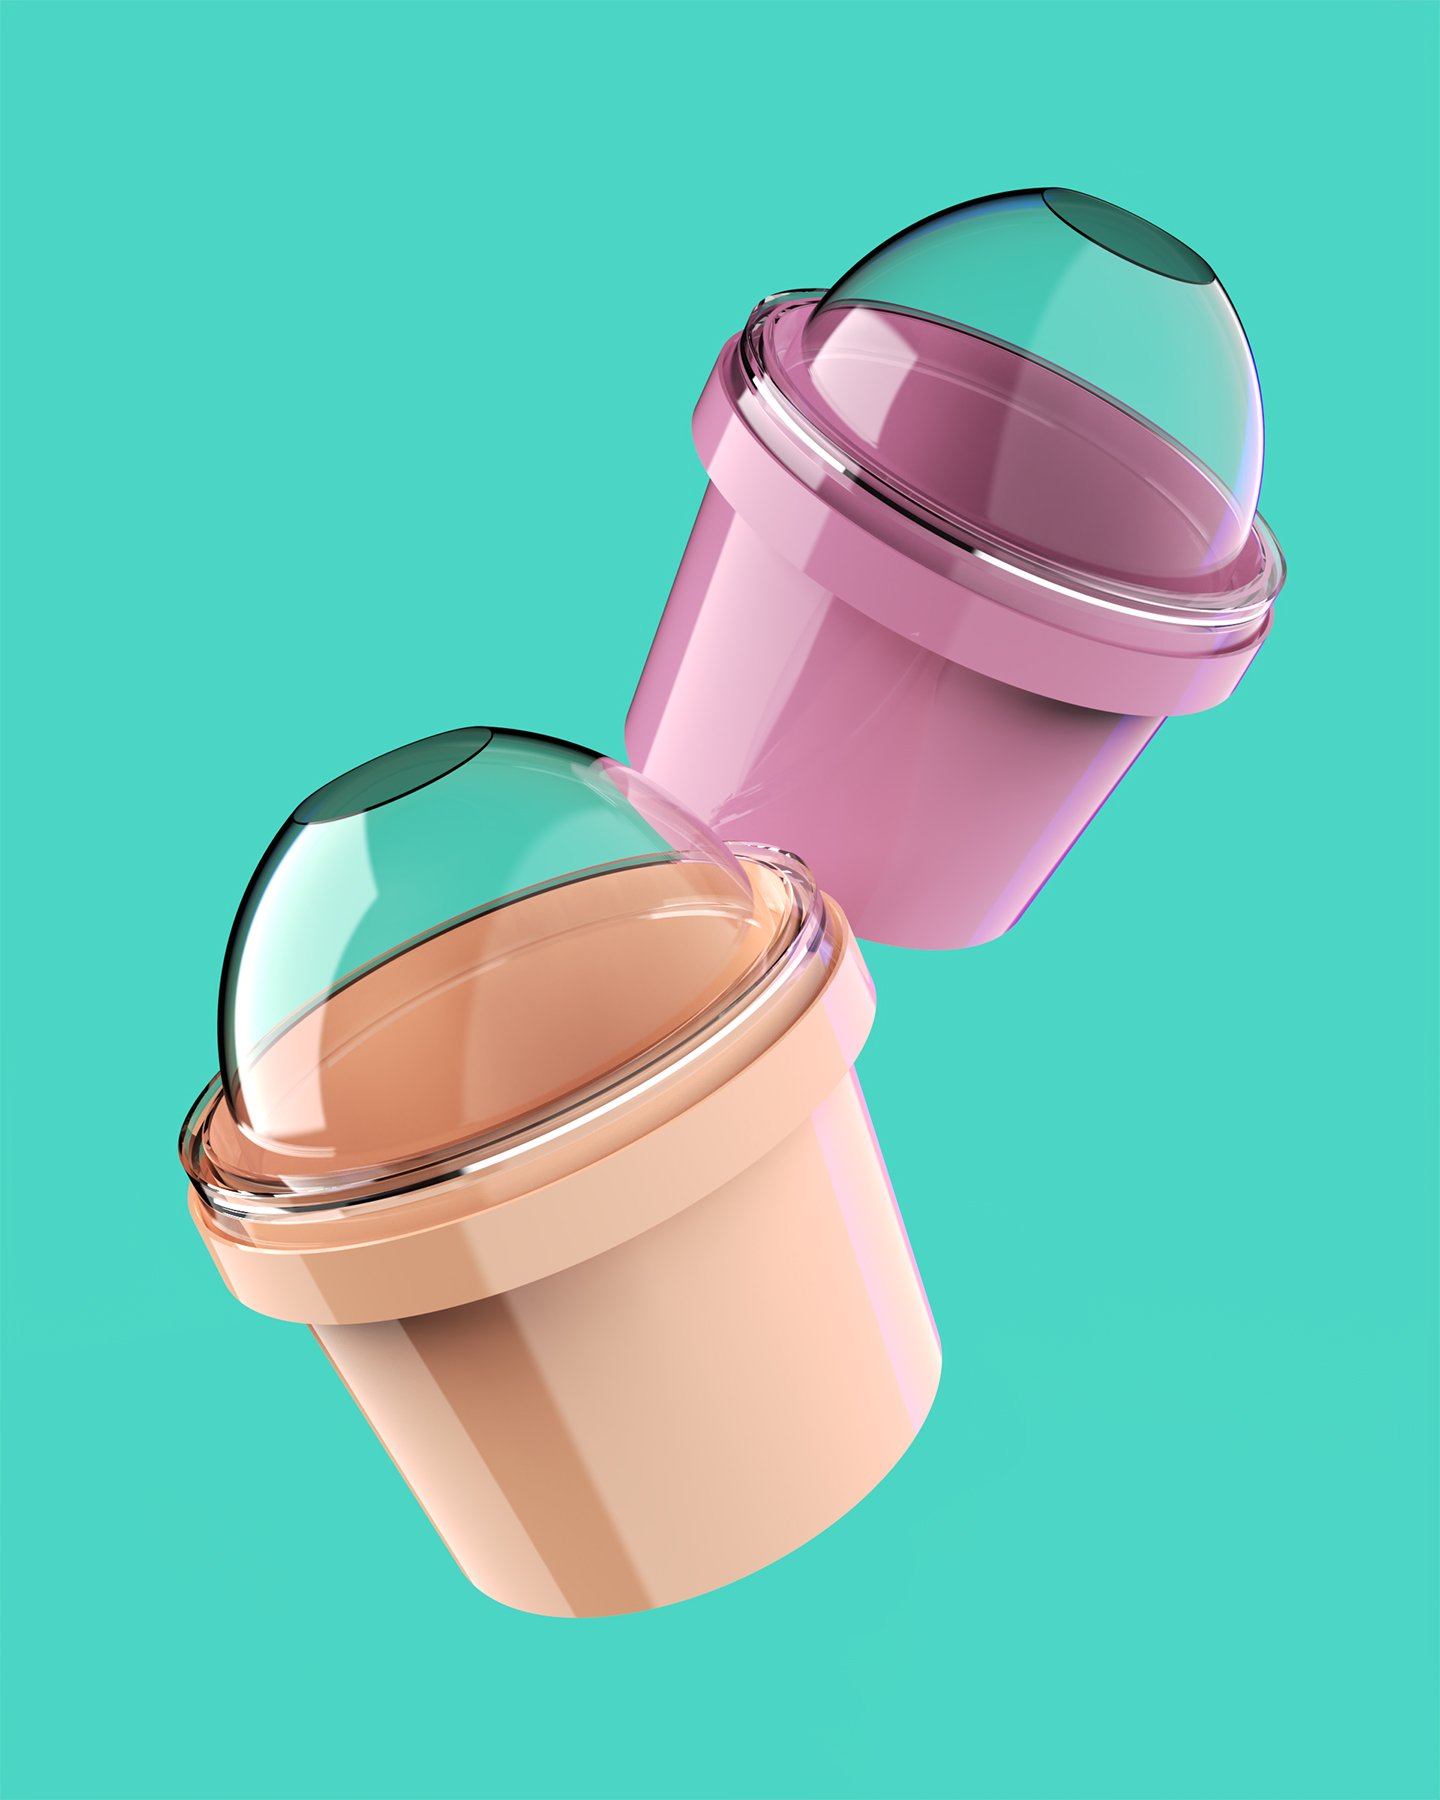 Ice Cream Container 3D Rendering